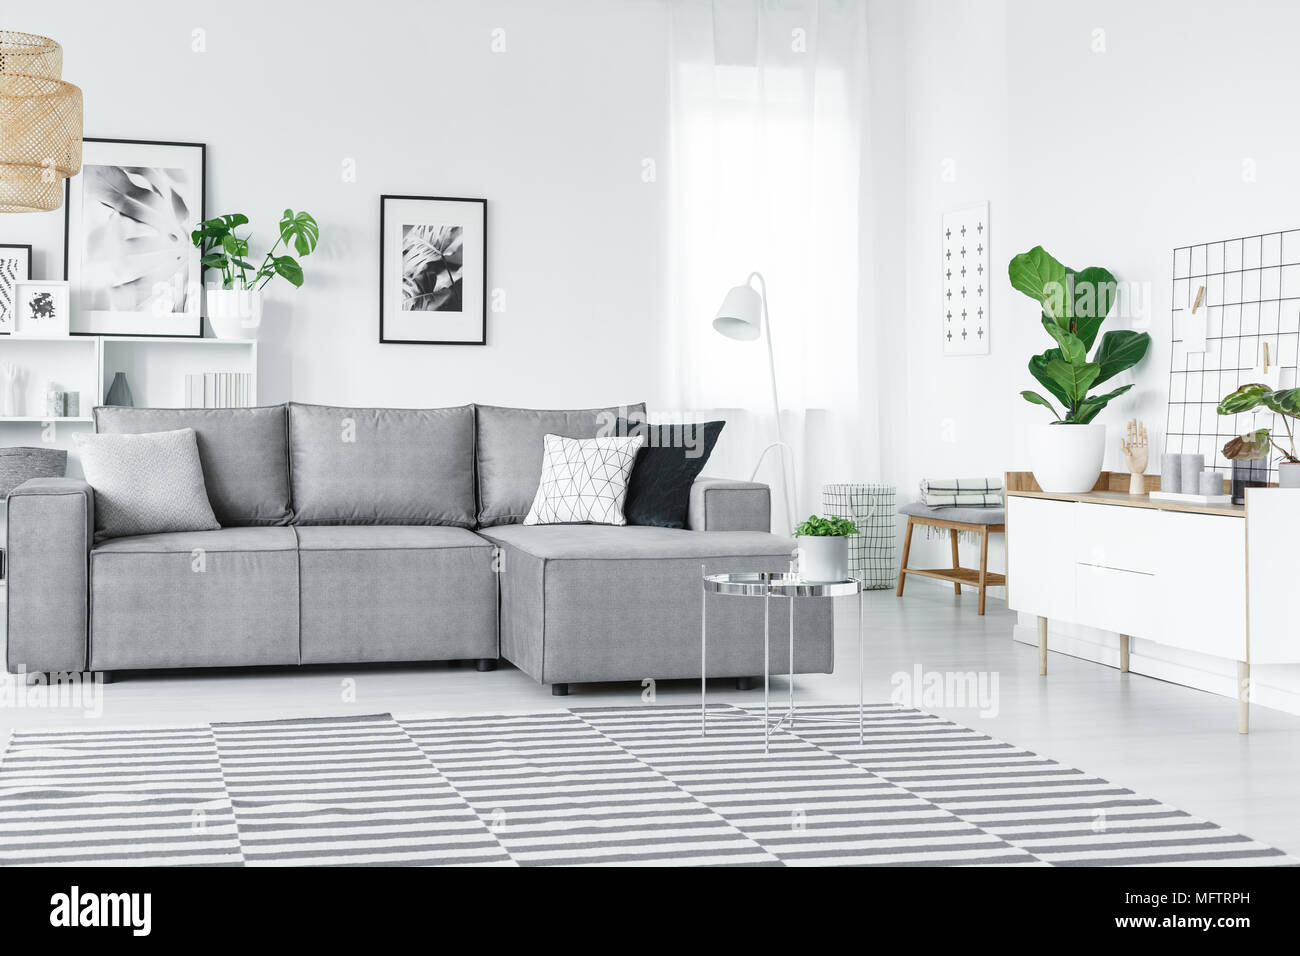 Appartement blanc et gris à rayures, de tapis d'intérieur de la table d'angle et des plantes vertes Banque D'Images